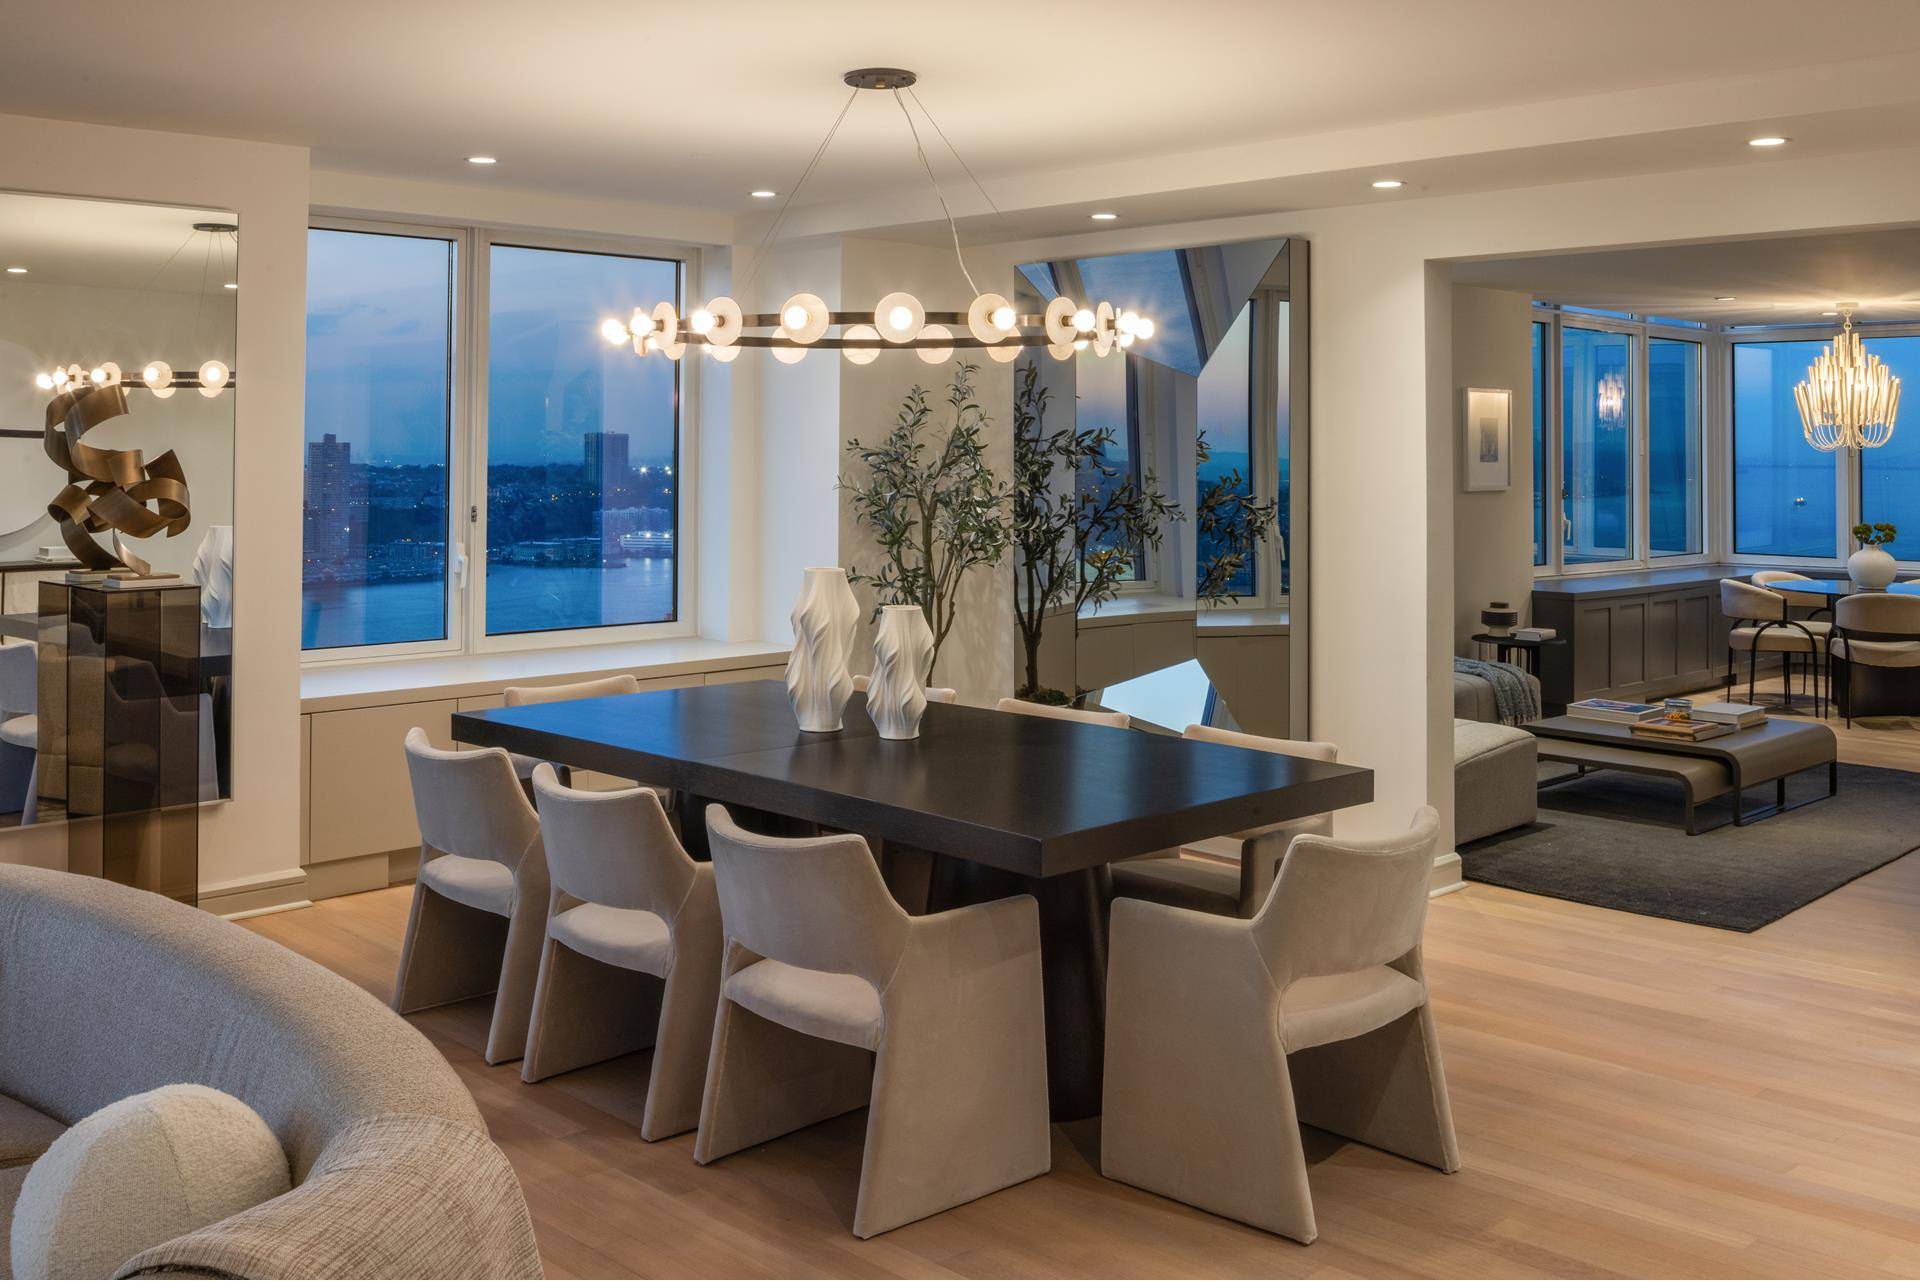 Elegance abounds in this expansive, private full floor gem at The Rushmore condominium !